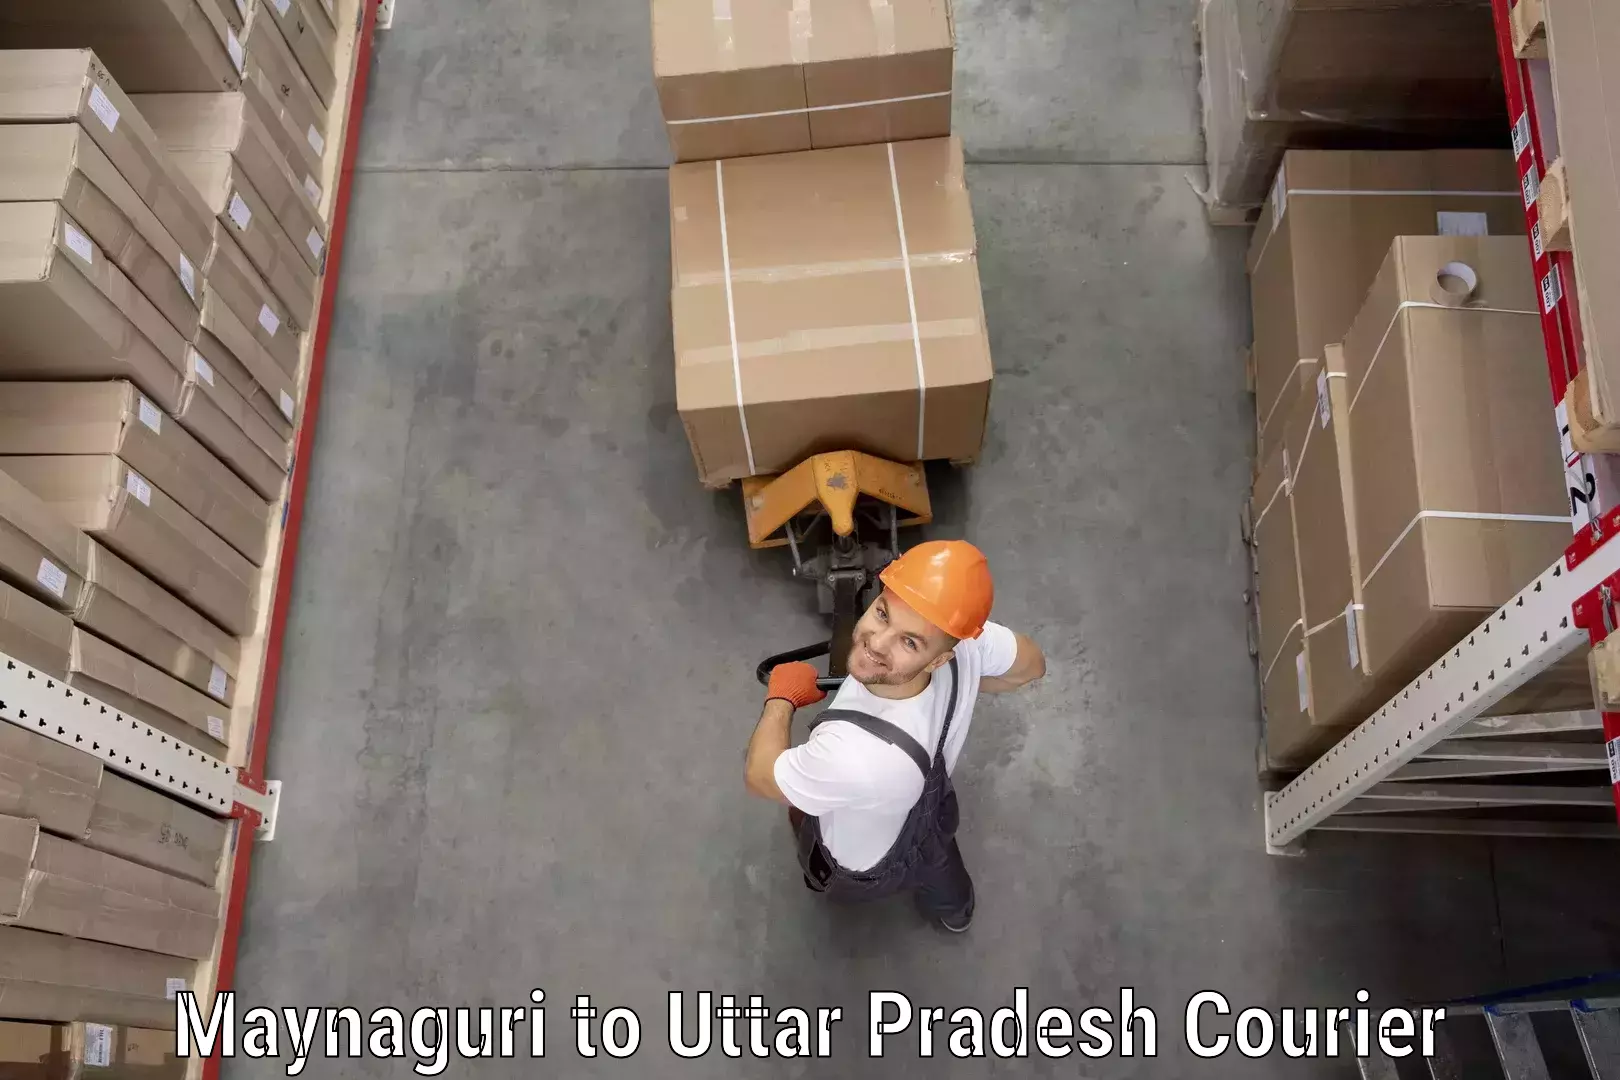 Rapid shipping services Maynaguri to Uttar Pradesh